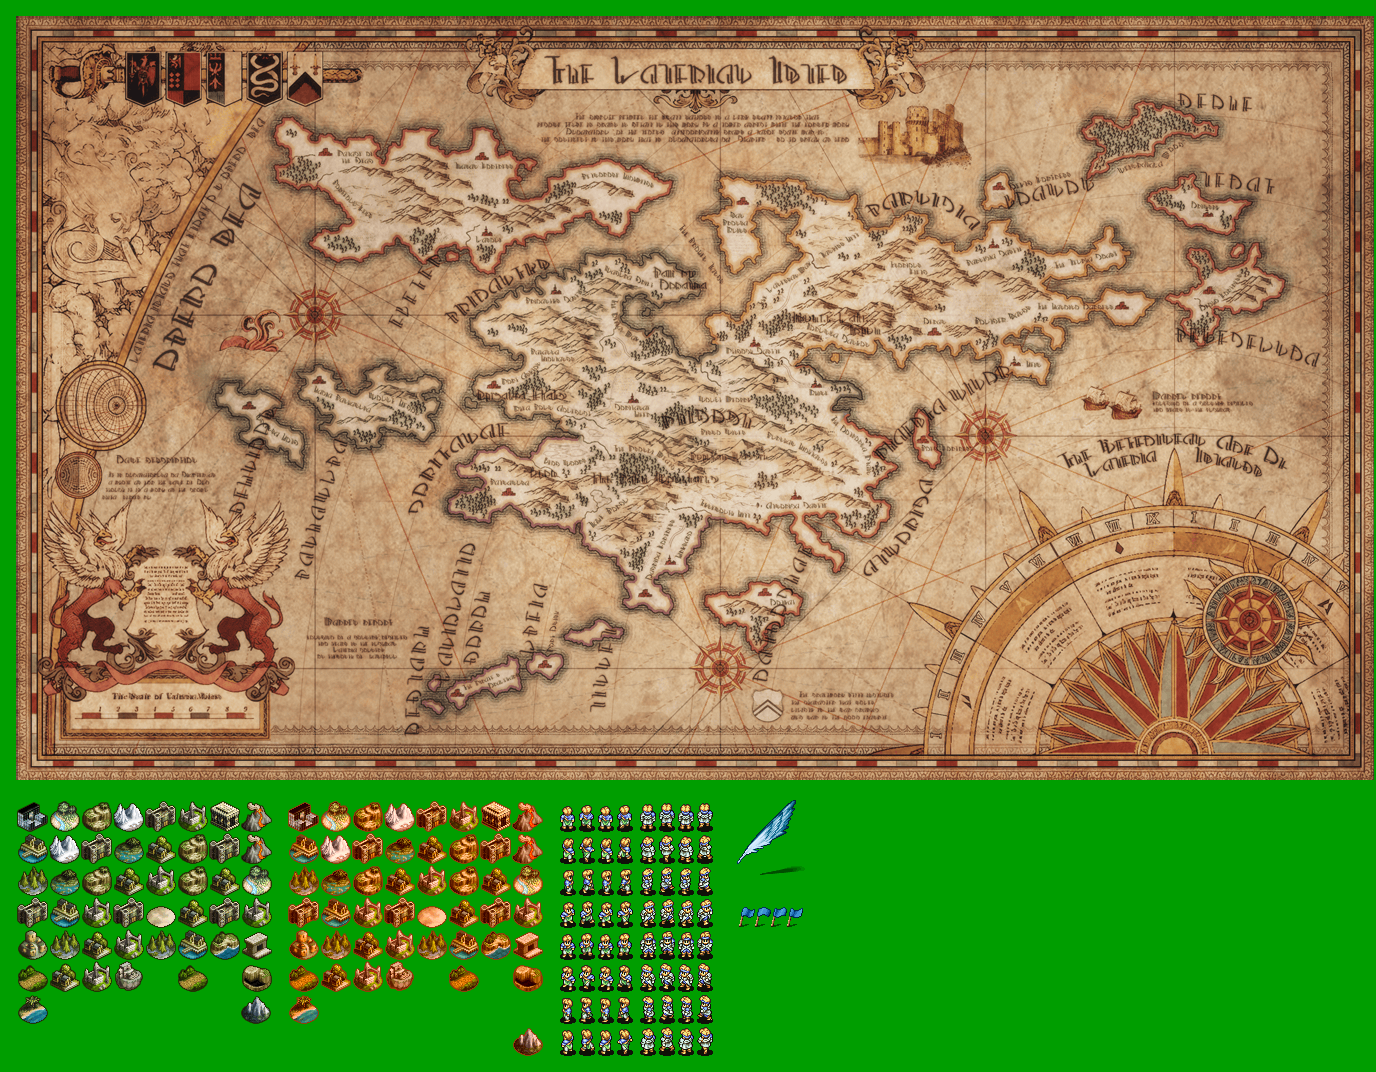 Tactics Ogre: Let Us Cling Together - World Map